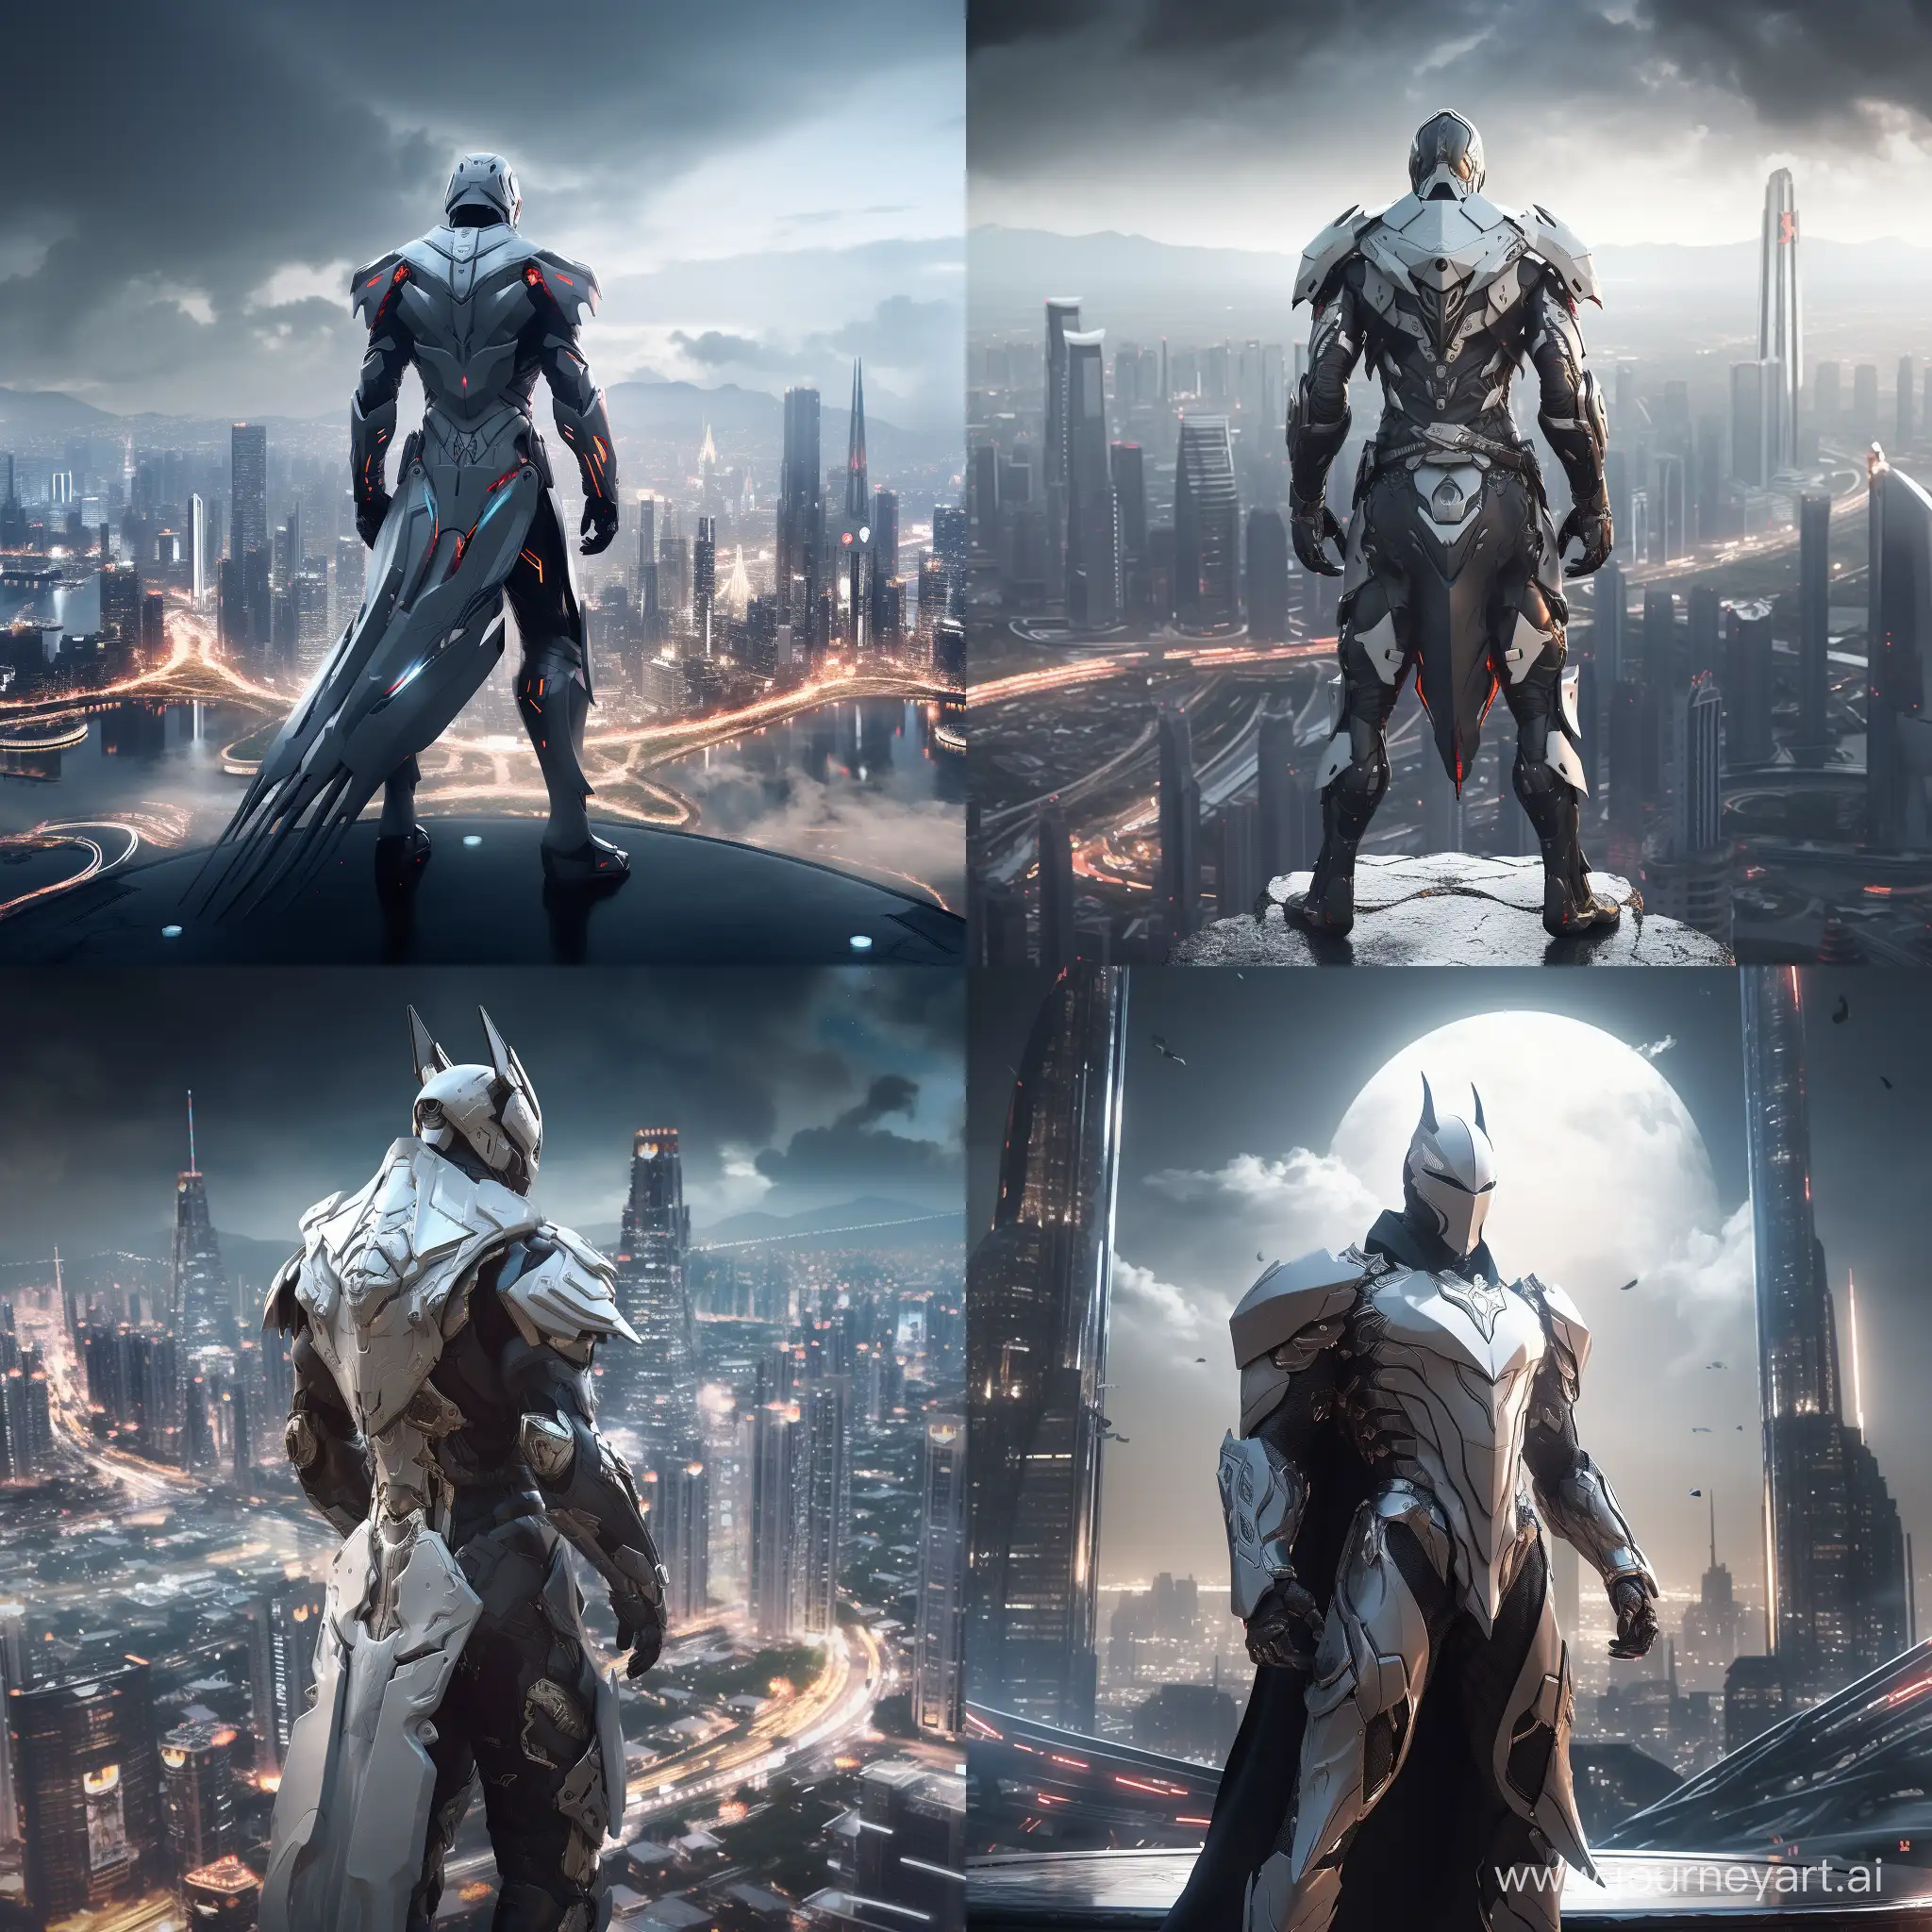 Futuristic-White-Dark-Knight-Stands-Tall-Amidst-Dazzling-Cityscape